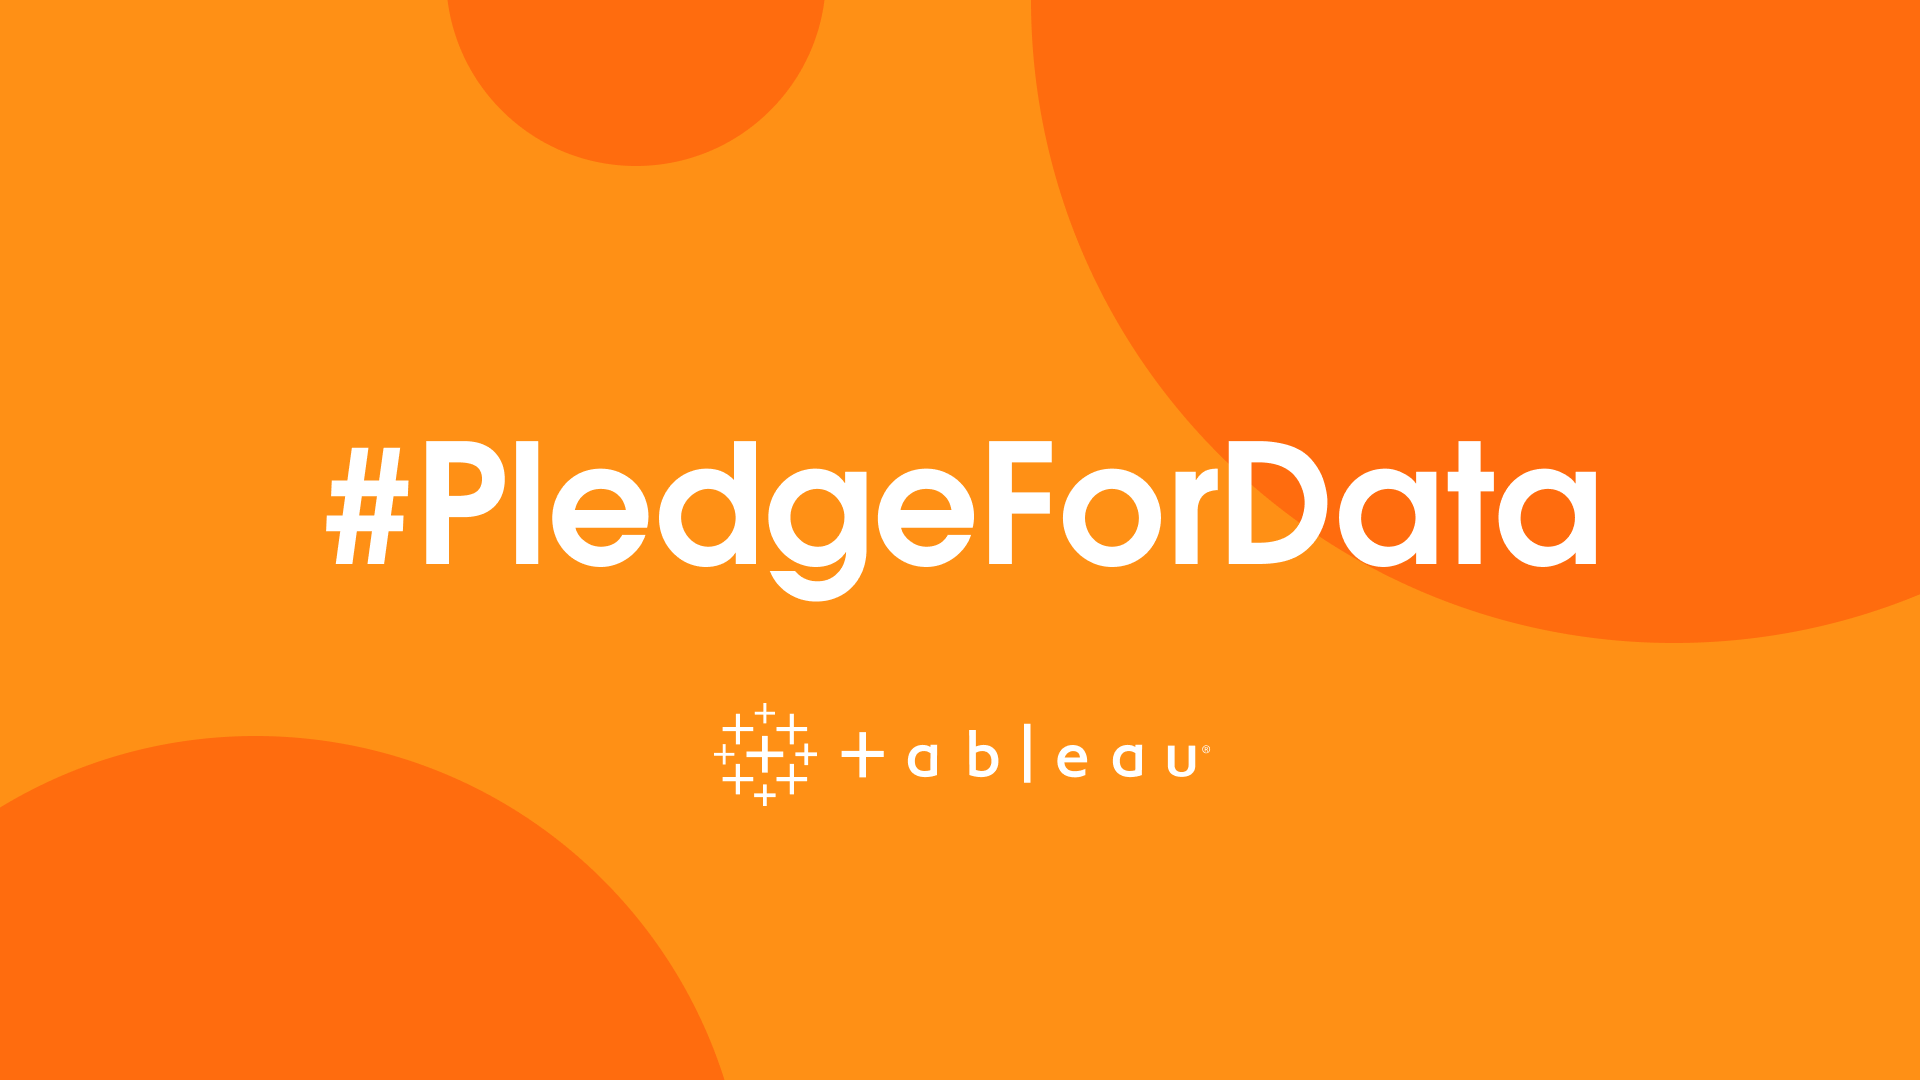 Pledge for Data